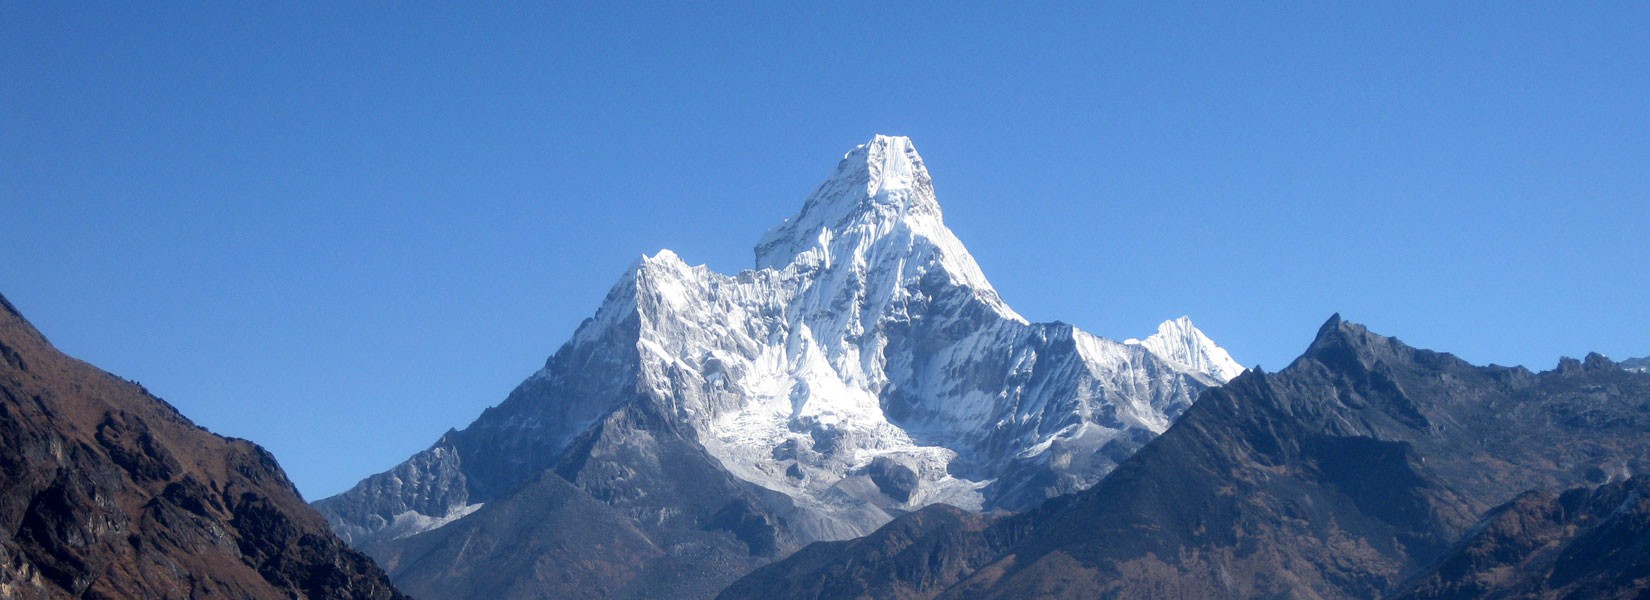 Everest Base Camp Trek Packing List